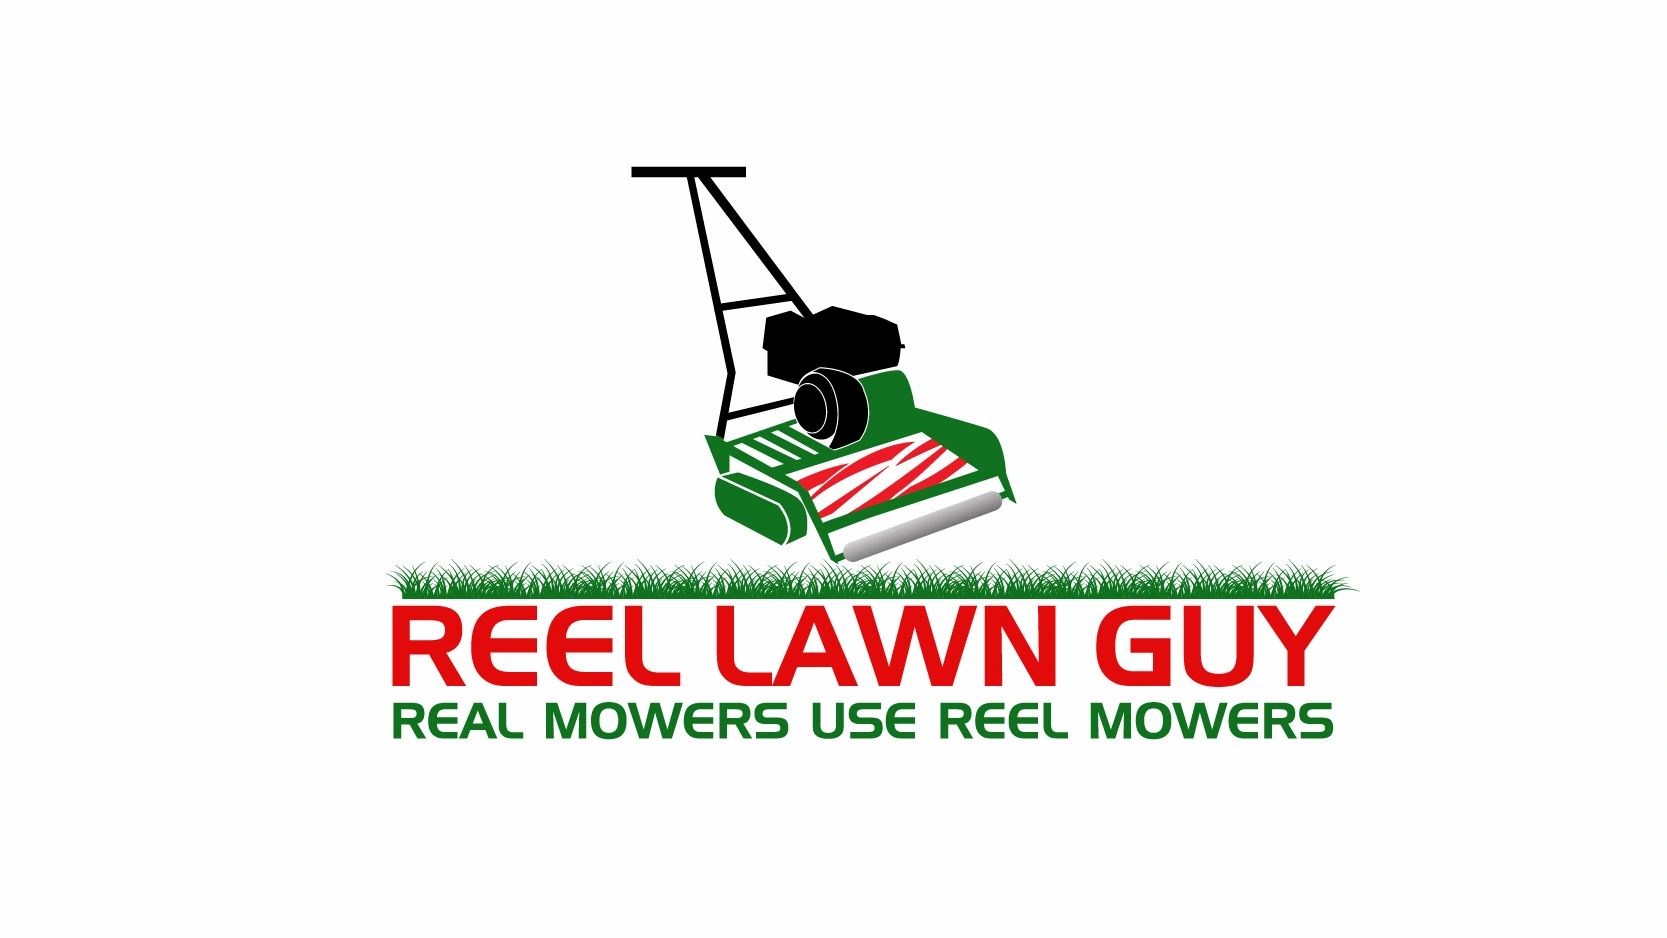 Reel mowers